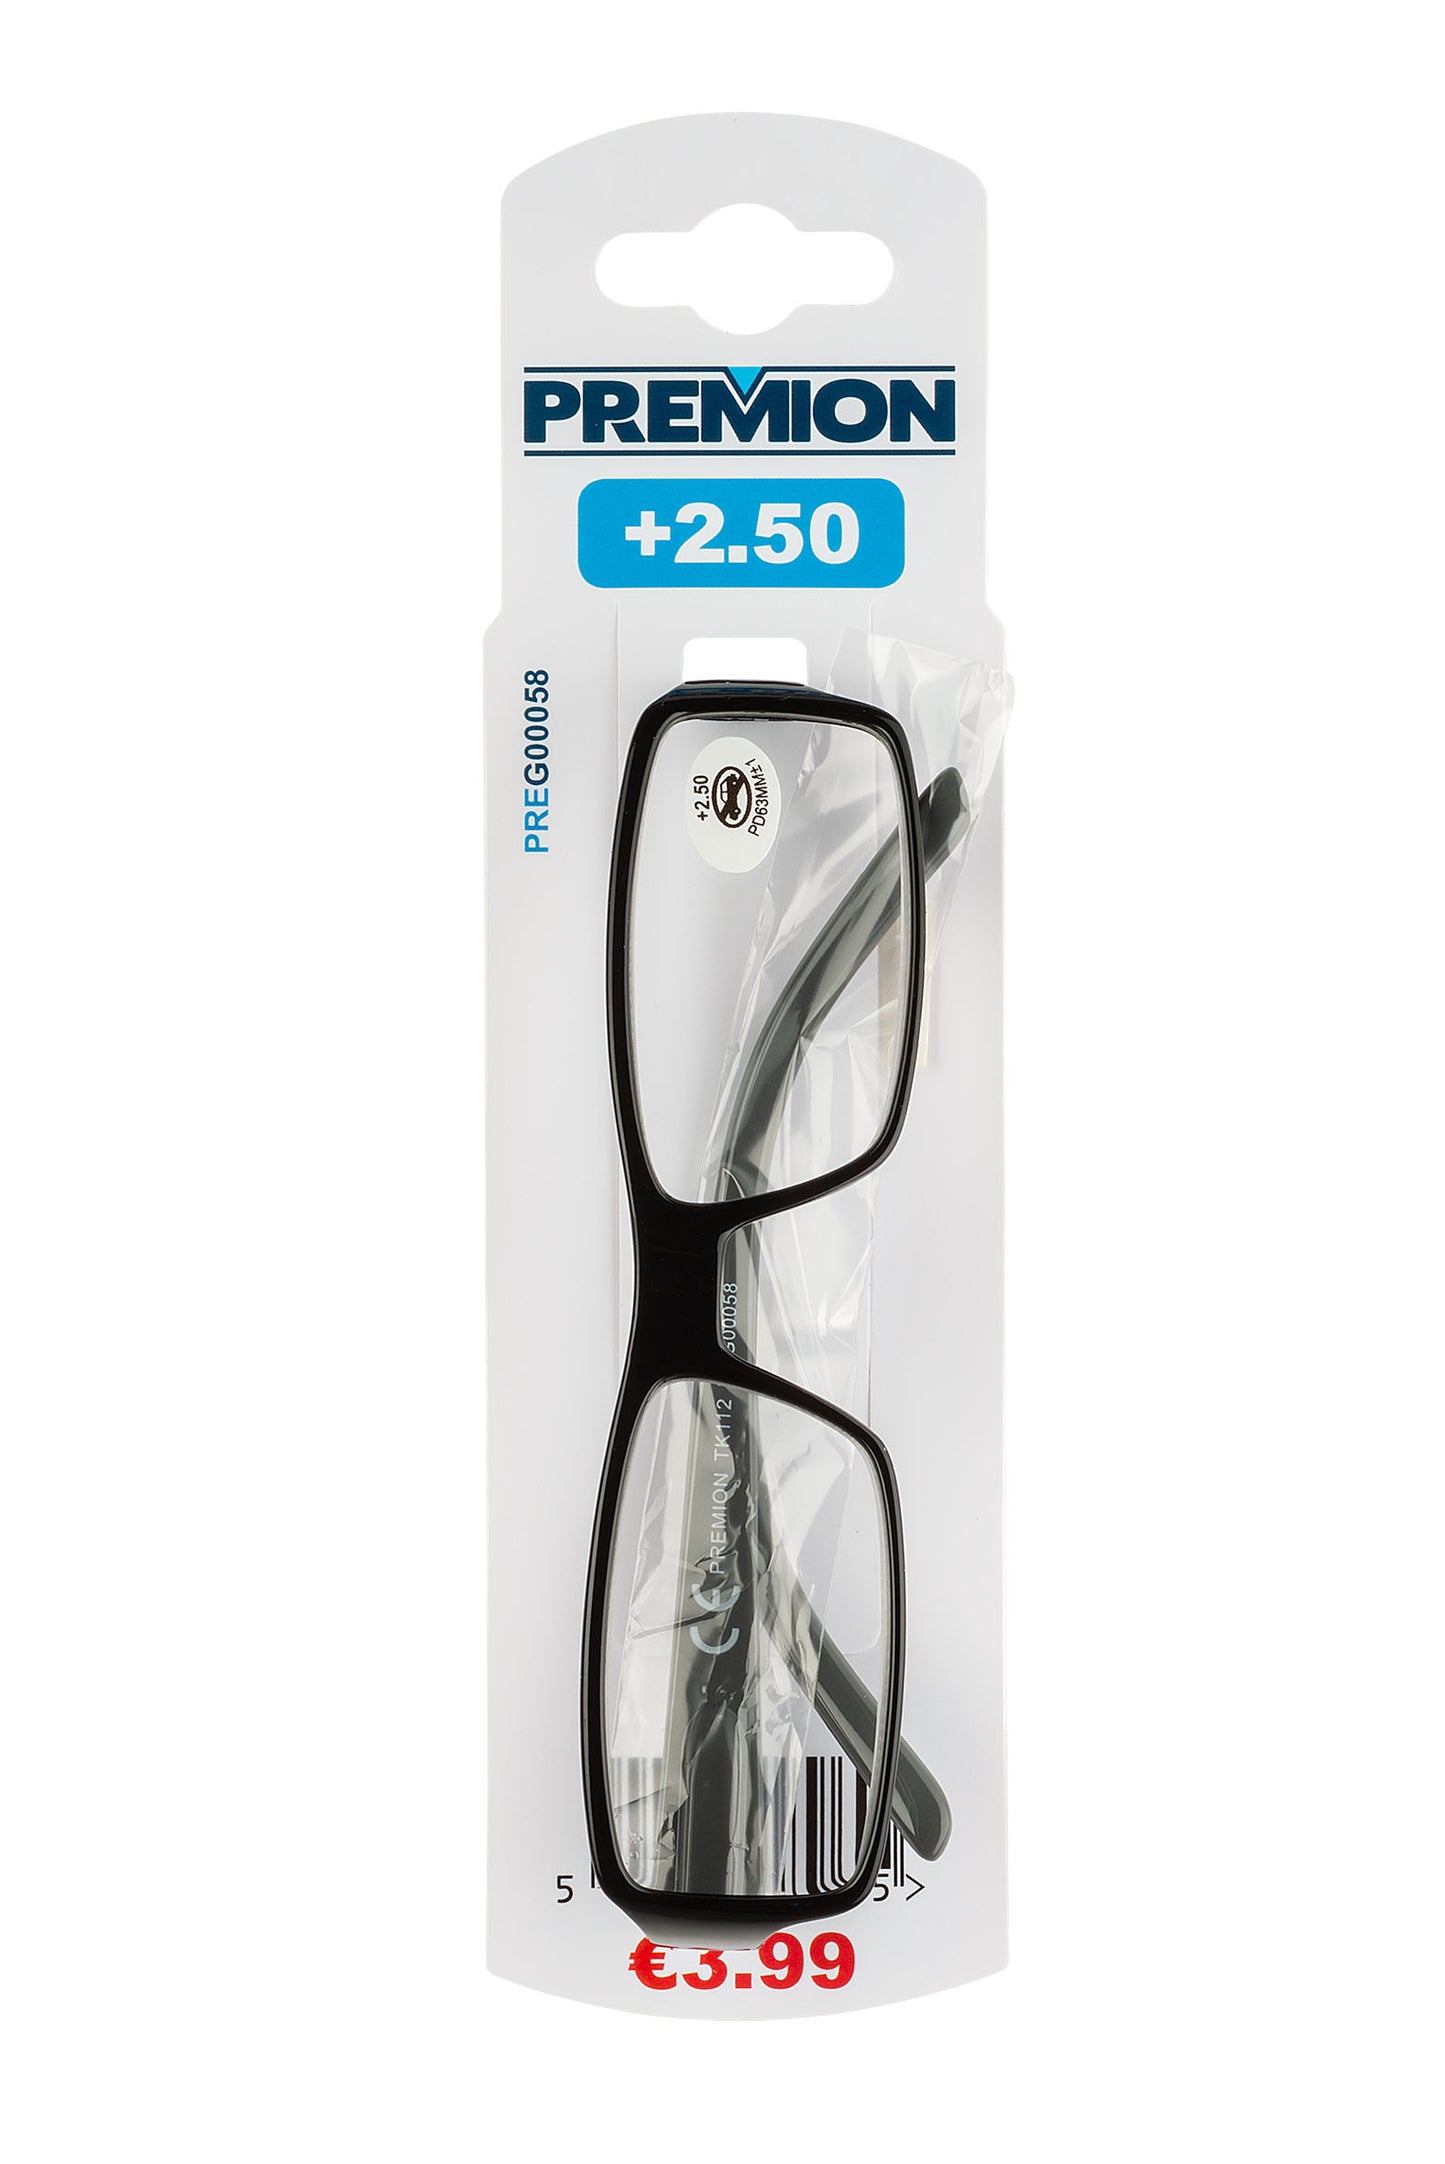 Premion - Reading Glasses - Black/Grey (Model 4)